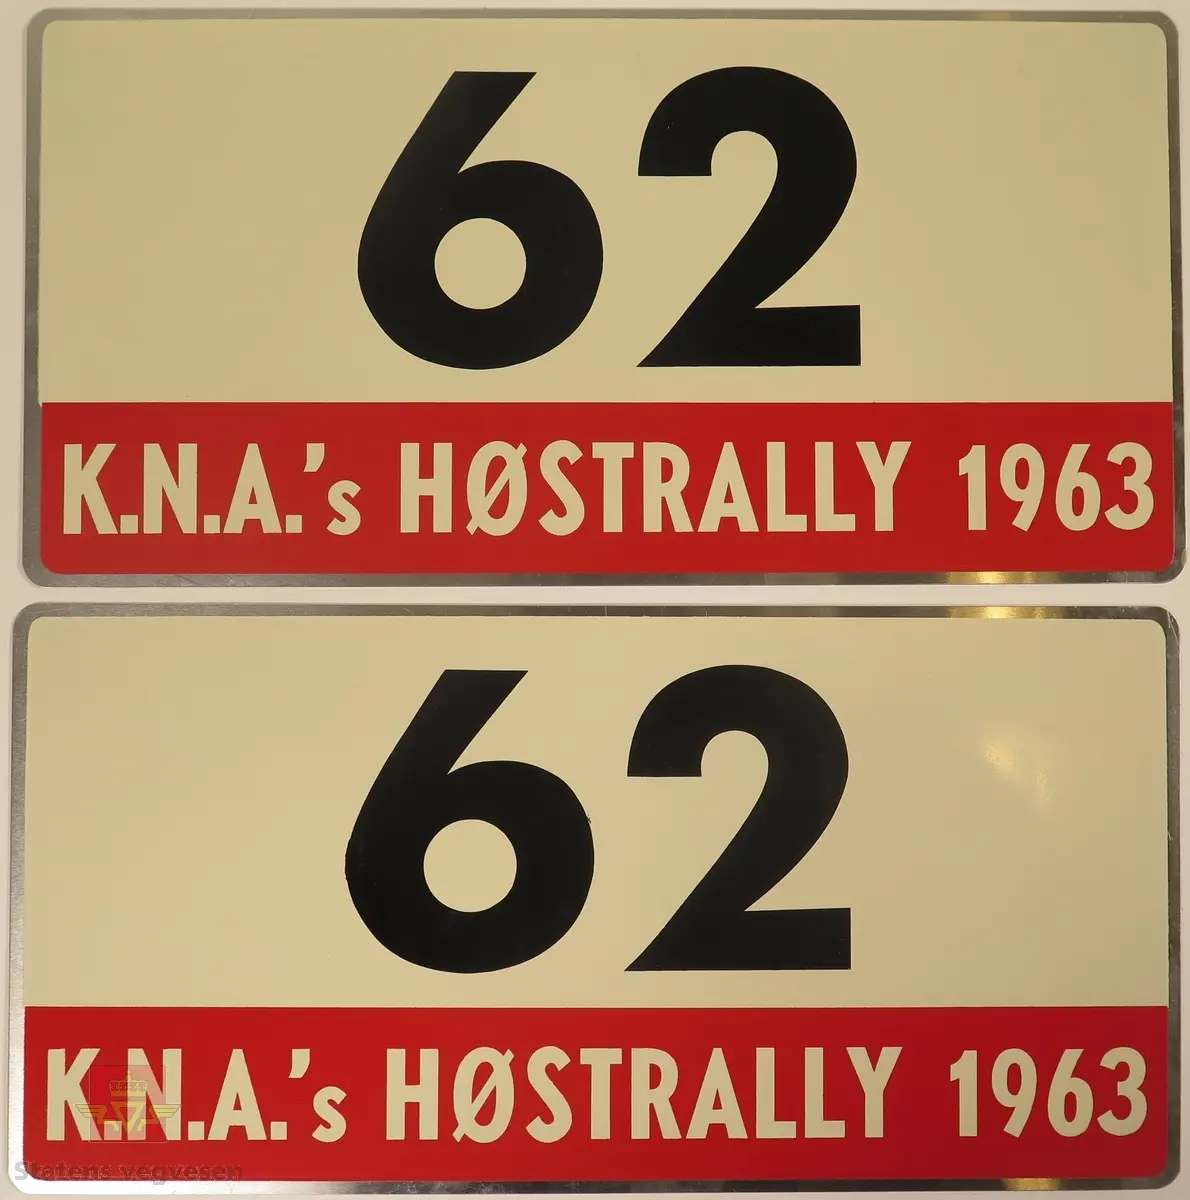 Hovedsakelig hvite metallskilt med et mindre rødt markeringsområde. Grupperingen med skilt har også nummeret "62" påført seg, dette er en indikasjon på deltakernummer.
Påskrift: K.N.A.'s HØSTRALLY 1963